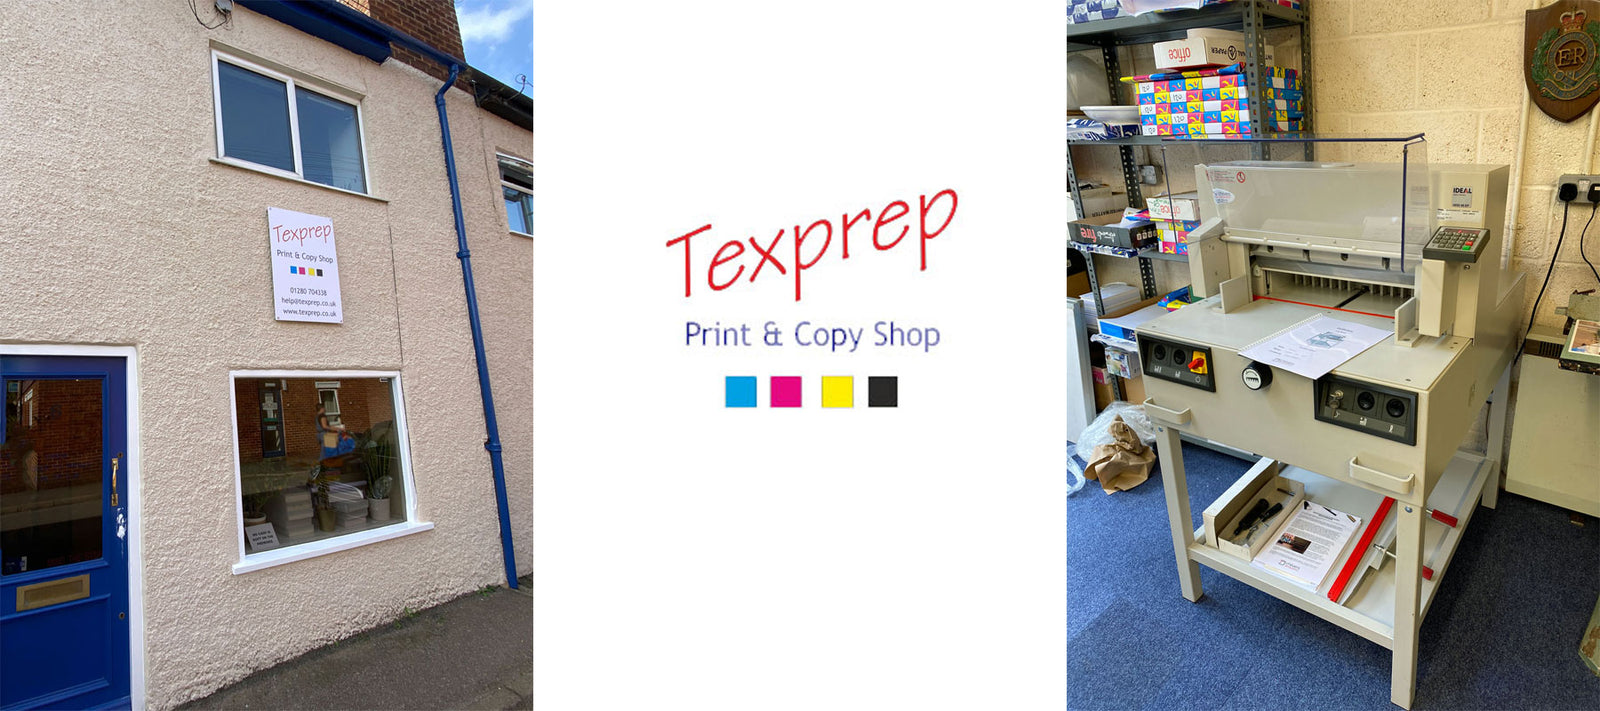 Texprep, Print & Copy shop